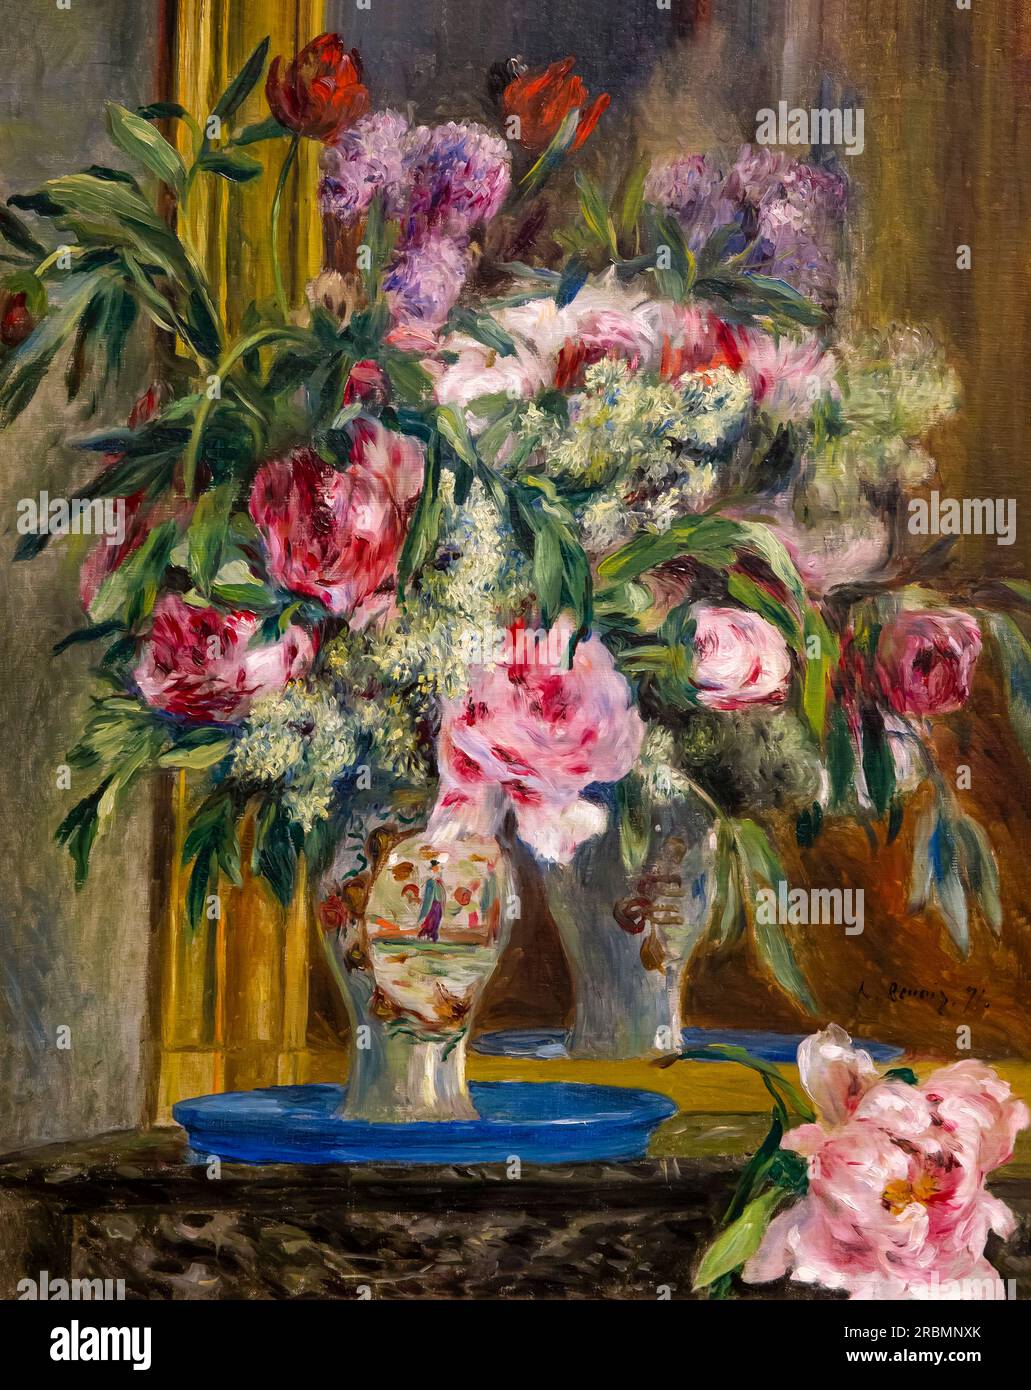 Vase of Flowers, Pierre-Auguste Renoir, 1871, Stock Photo